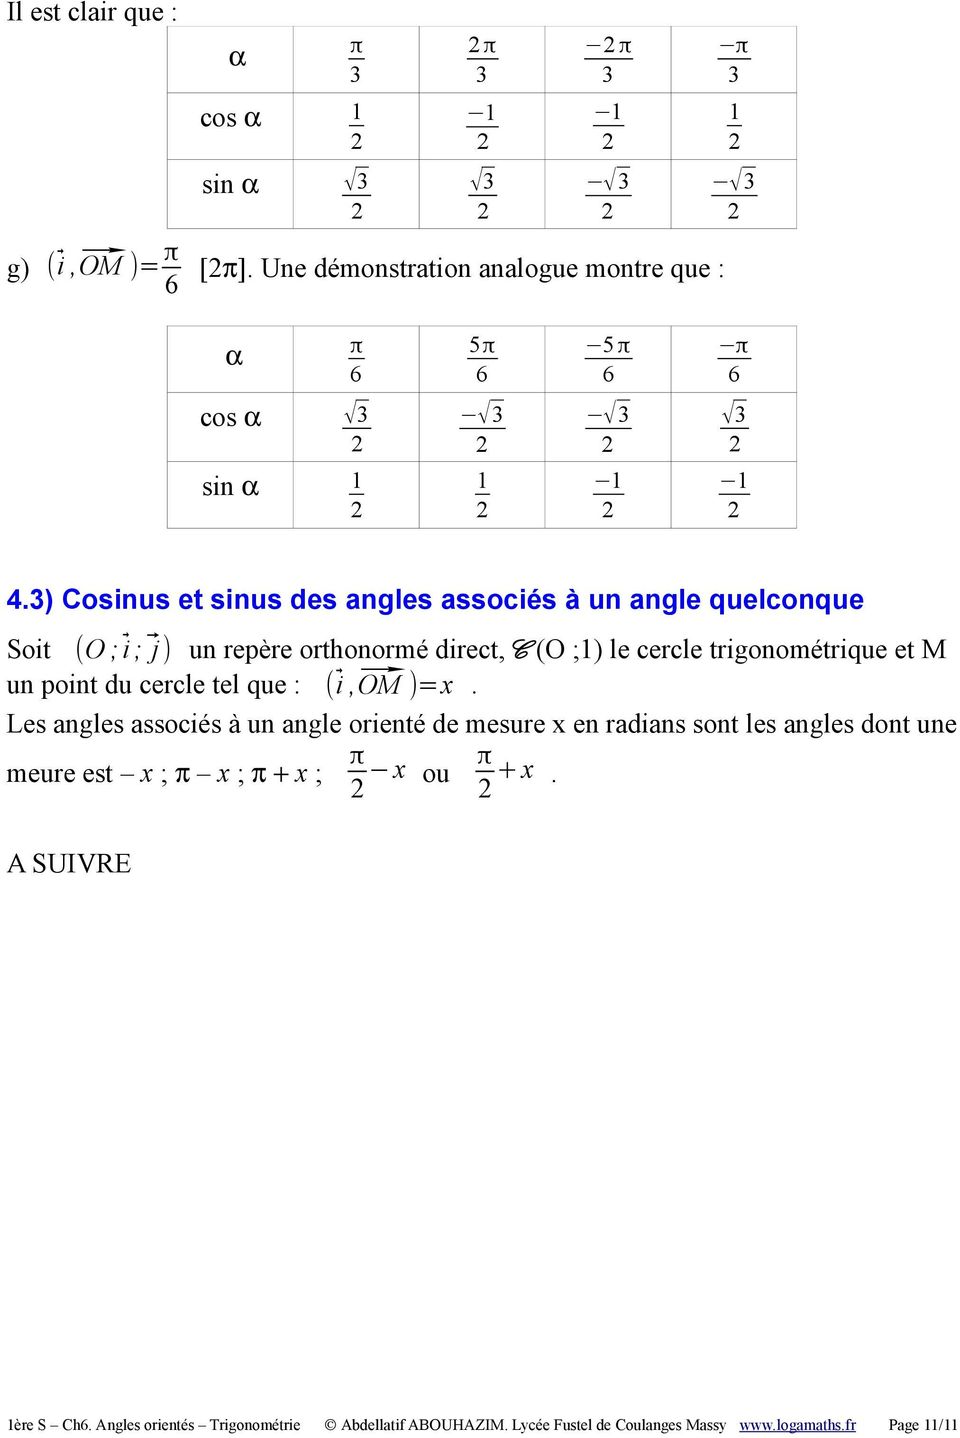 ) Cosinus et sinus des angles associés à un angle quelconque Soit (O ; i ; j ) un repère orthonormé